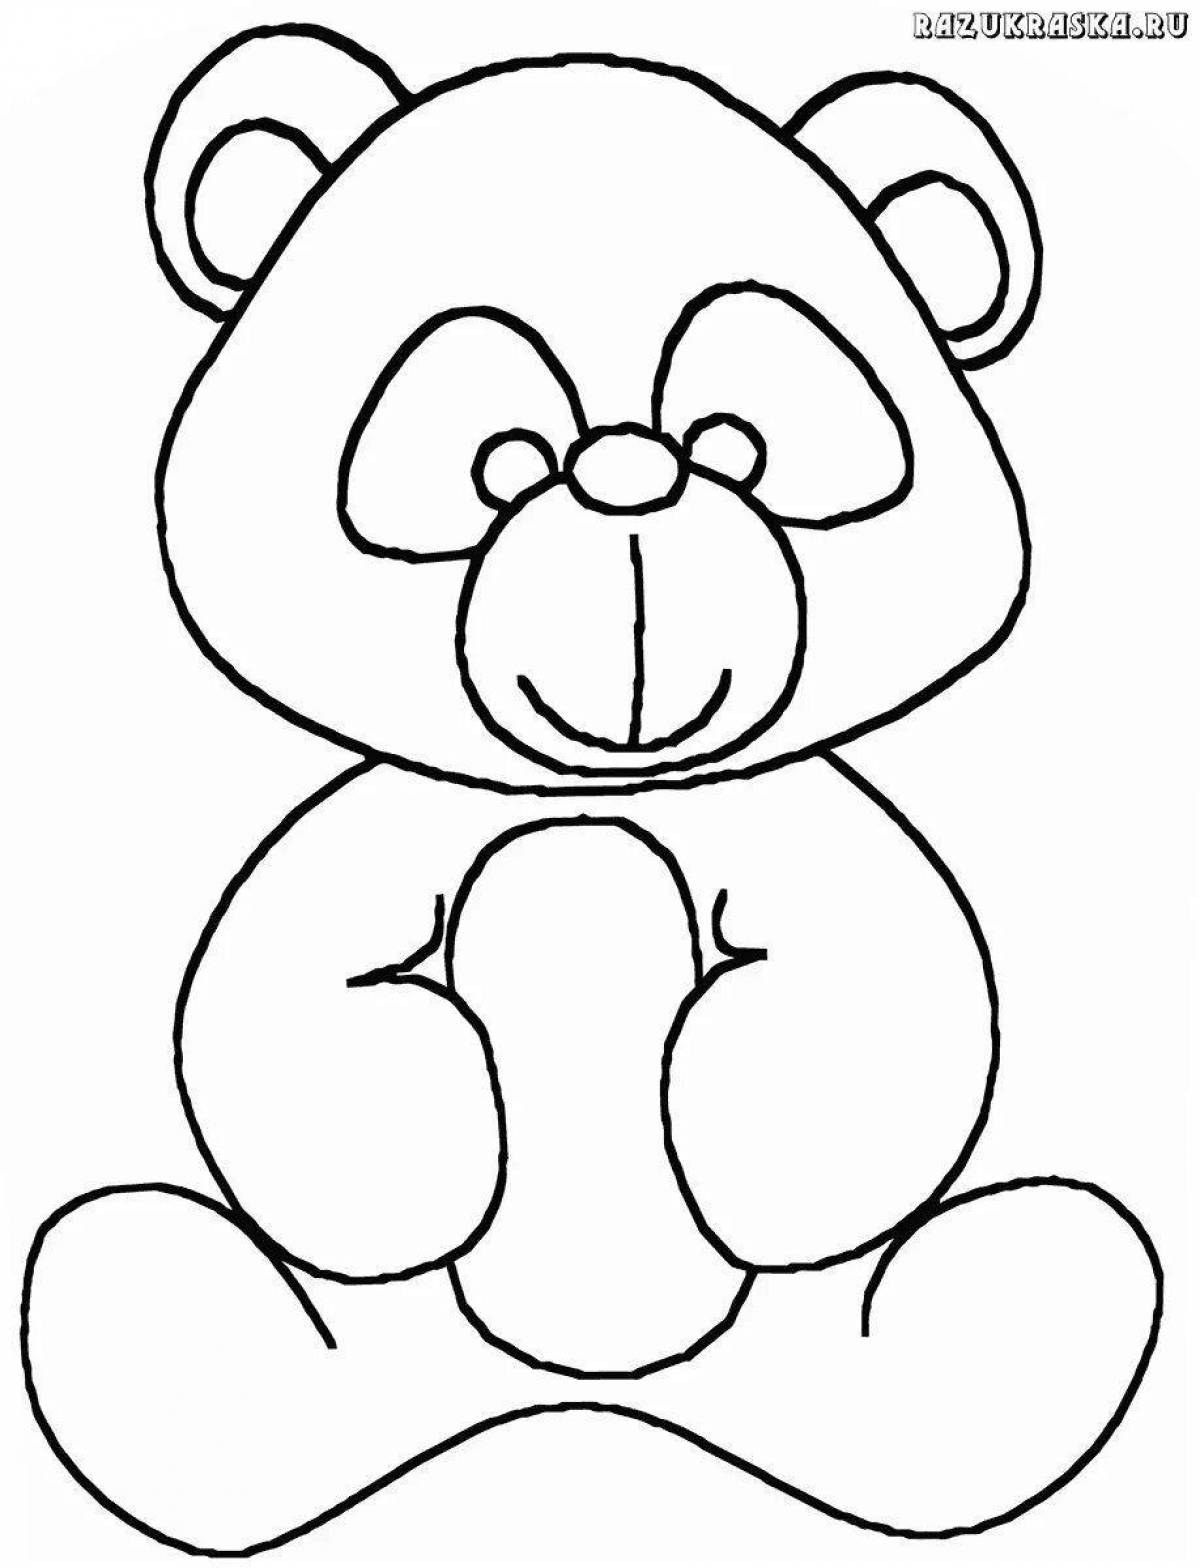 Раскраска праздничный олимпийский медведь